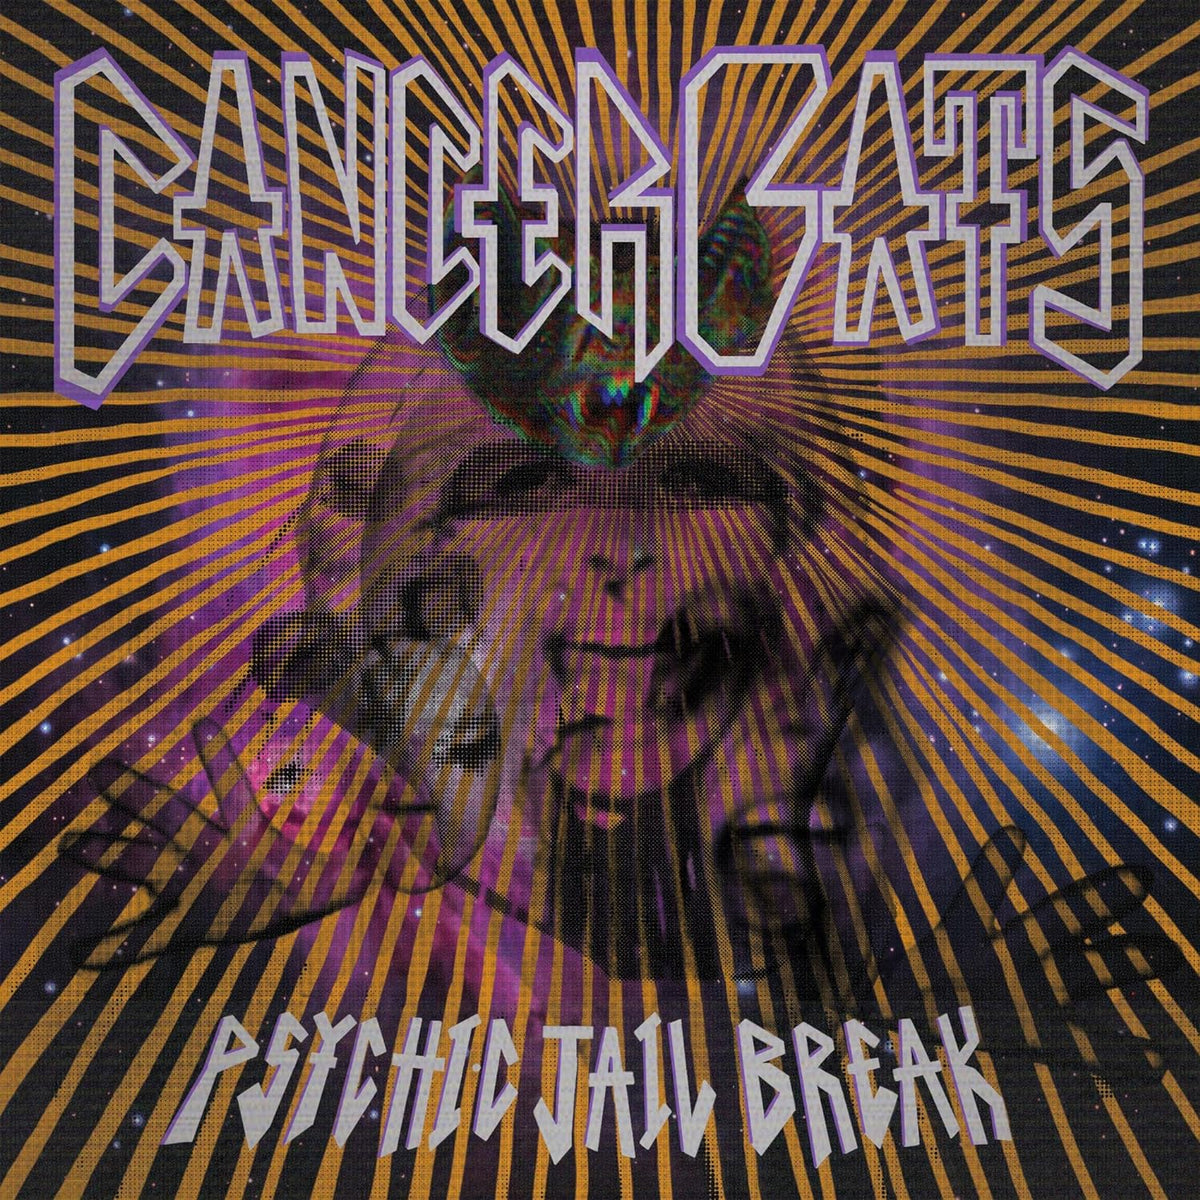 Cancer Bats - Psychic Jail Break (LP)